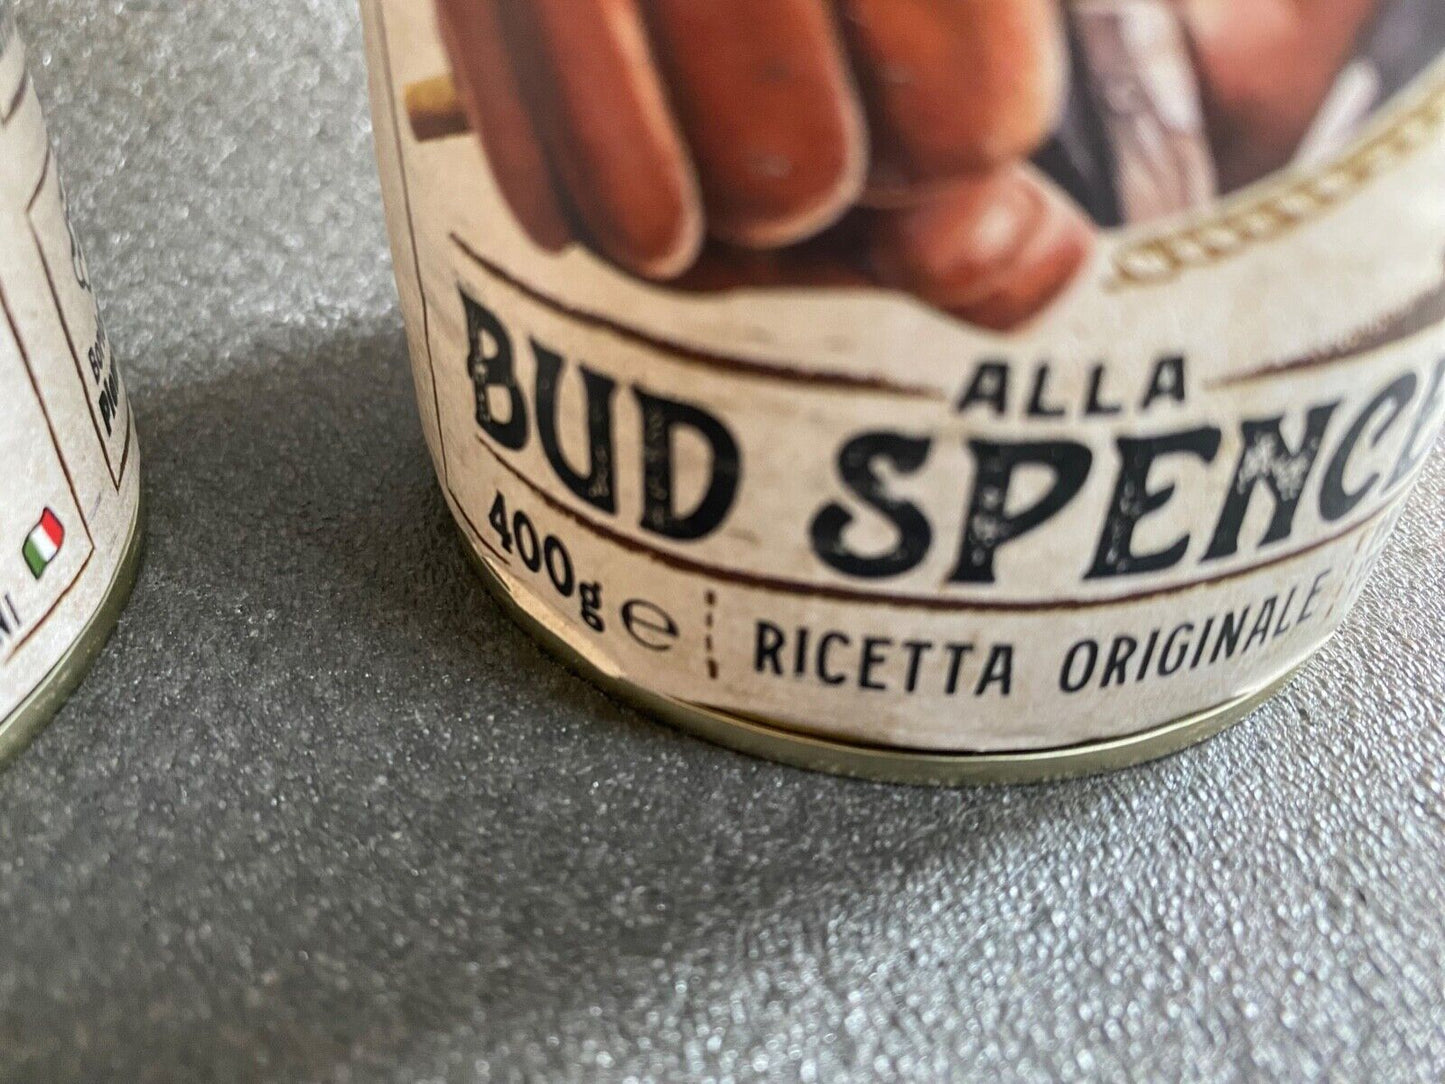 Fagioli alla Bud Spencer Ricetta Originale Bohnen & Speck 3x400g DEFEKT/VERBEULT